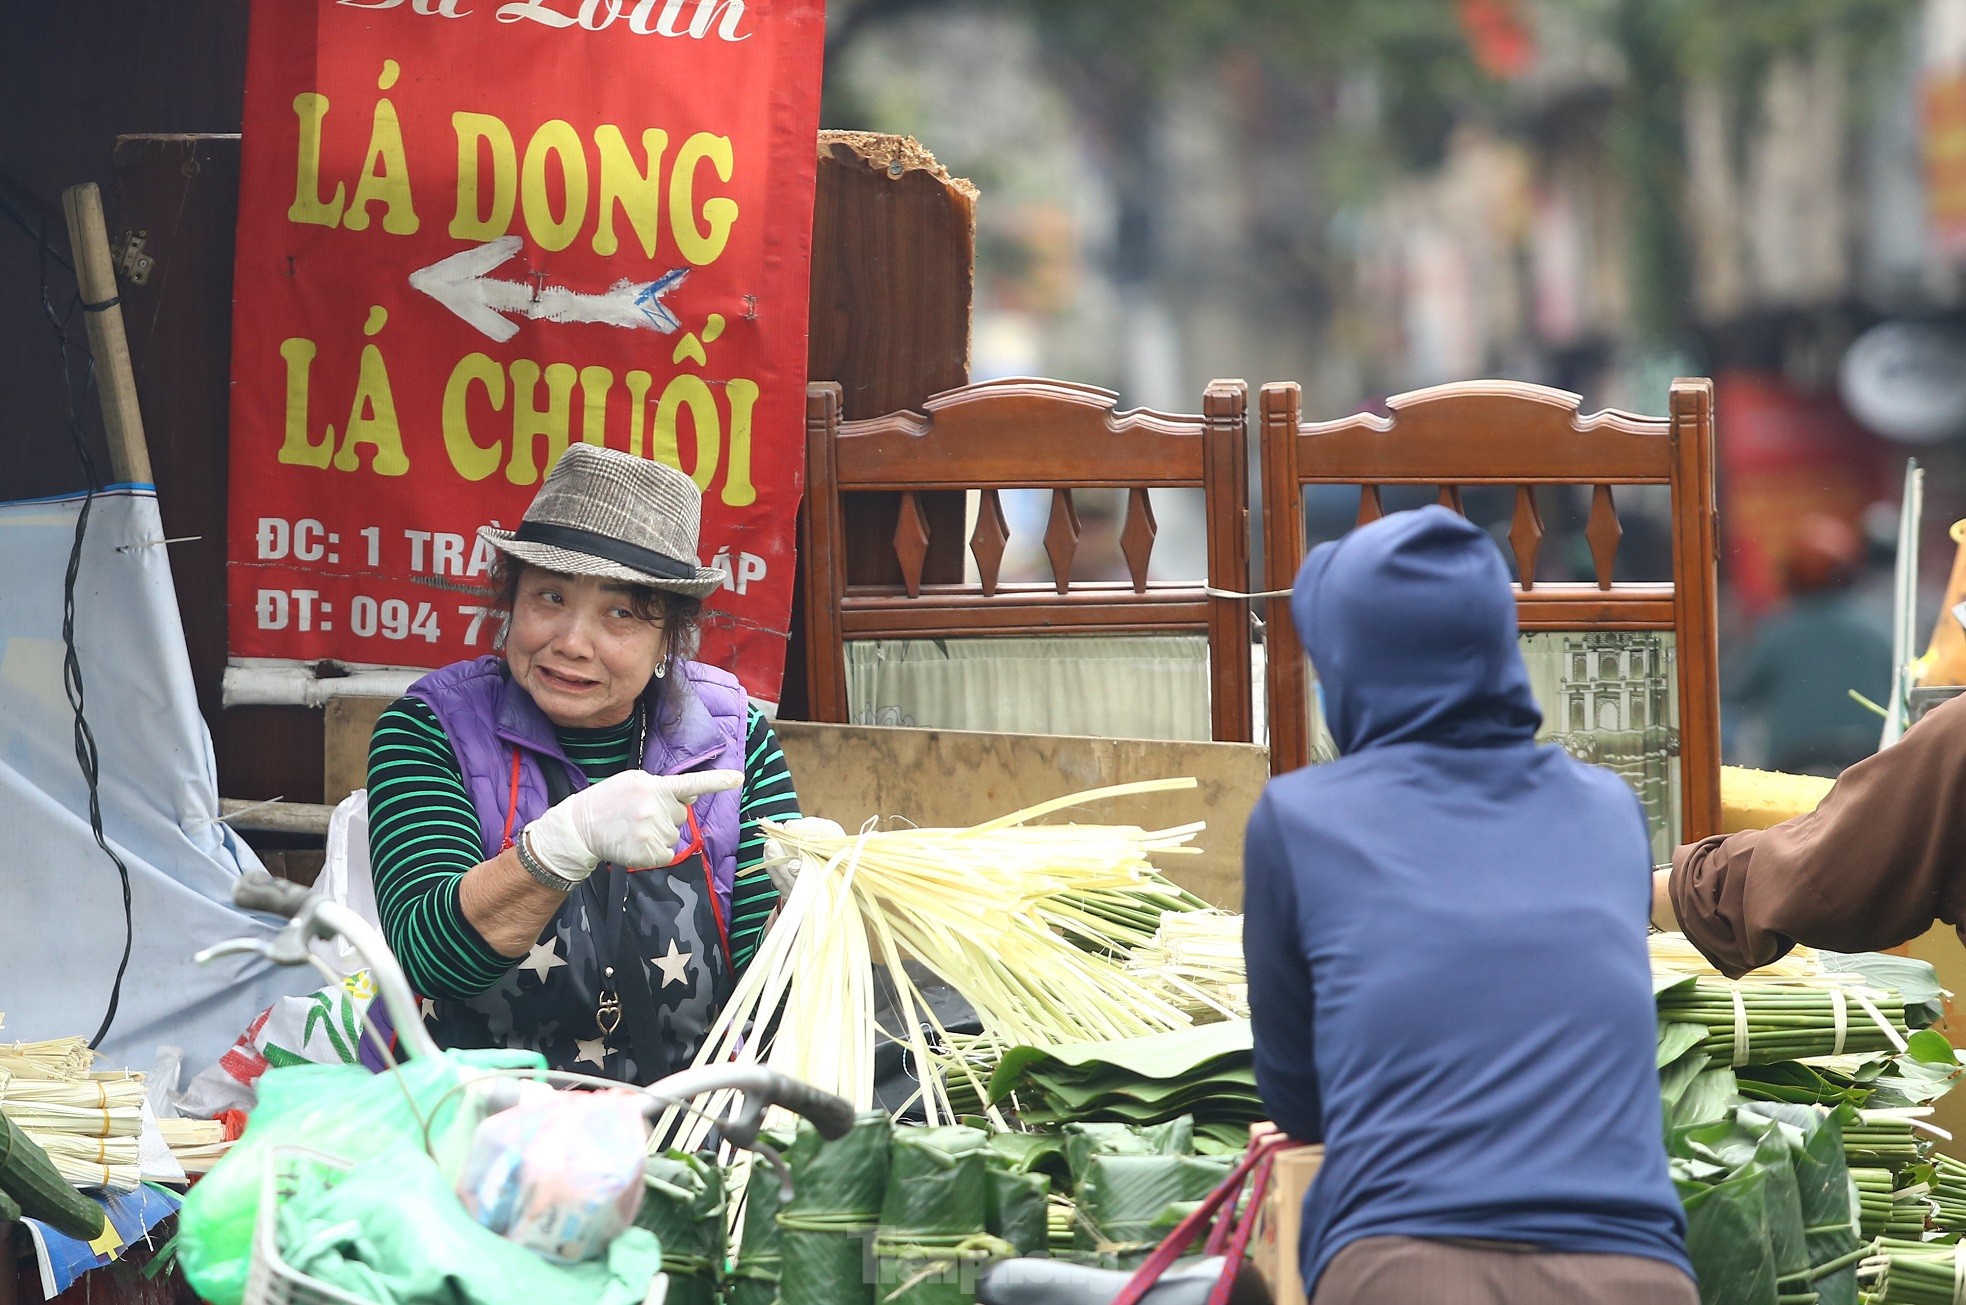 Chợ lá dong lâu đời nhất Hà Nội: Ngày bán hàng vạn lá, thu về hàng chục triệu - Ảnh 15.